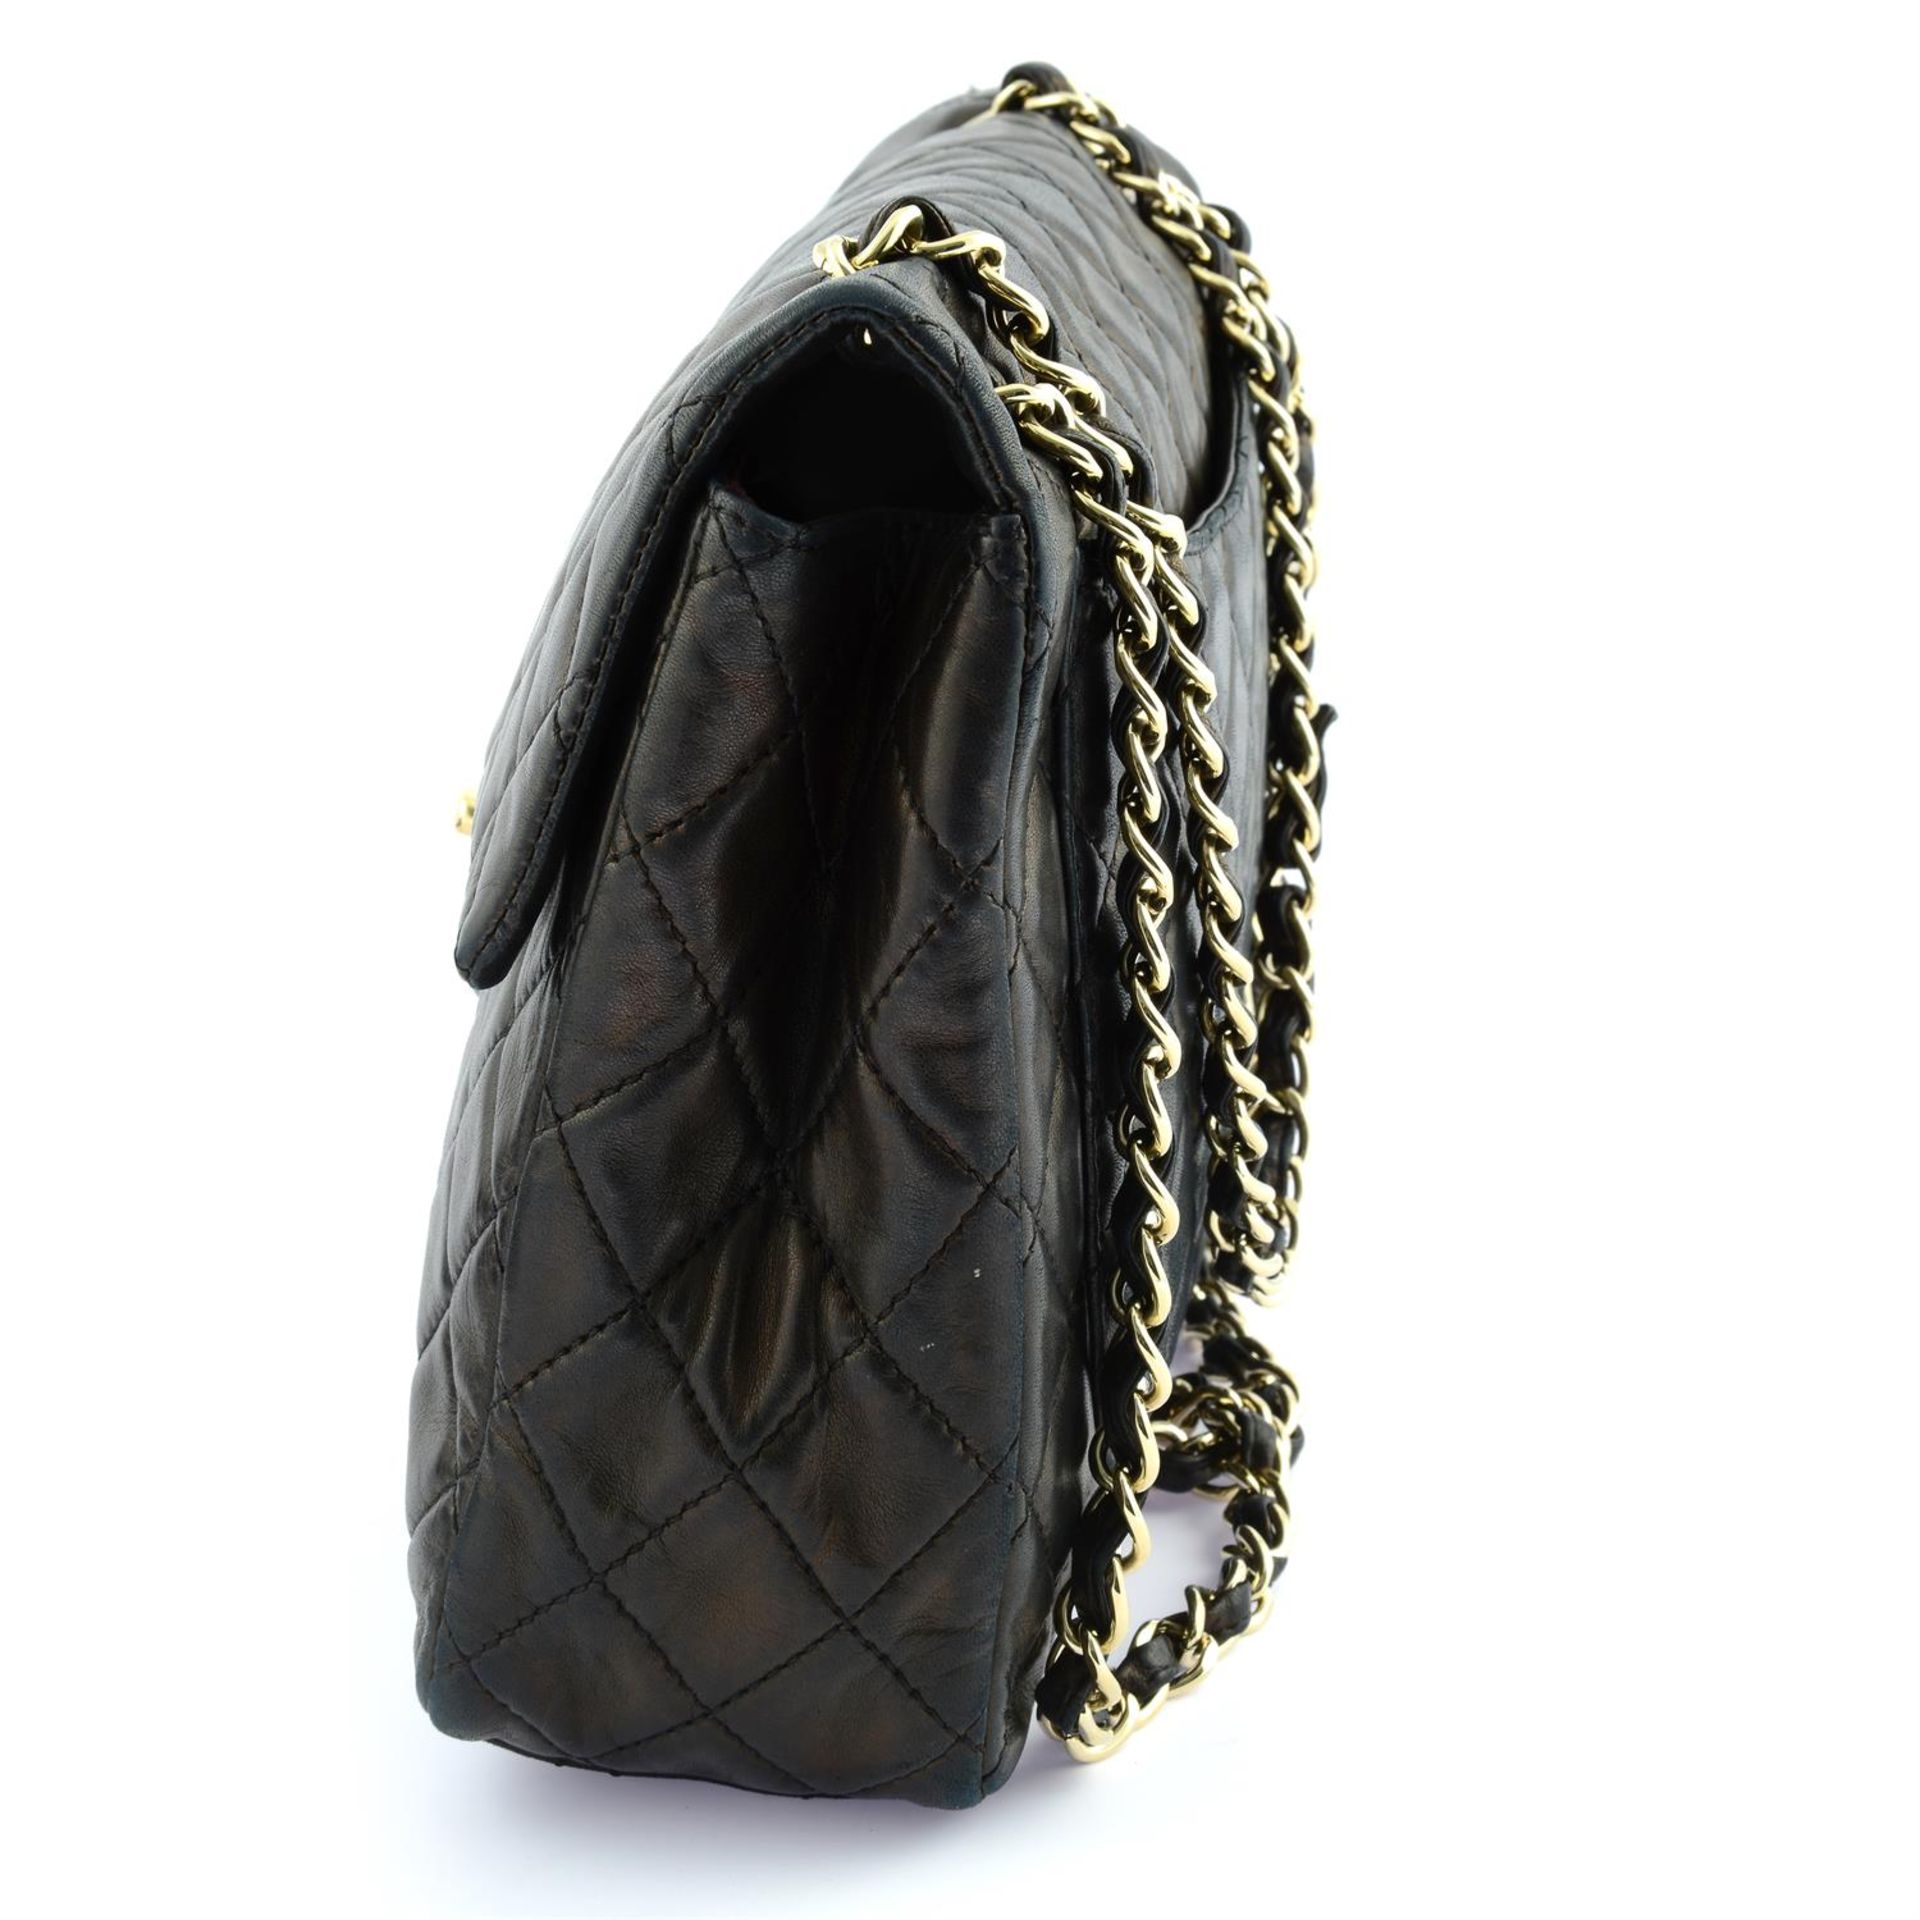 CHANEL - a metallic leather lambskin Jumbo single flap bag. - Image 4 of 9